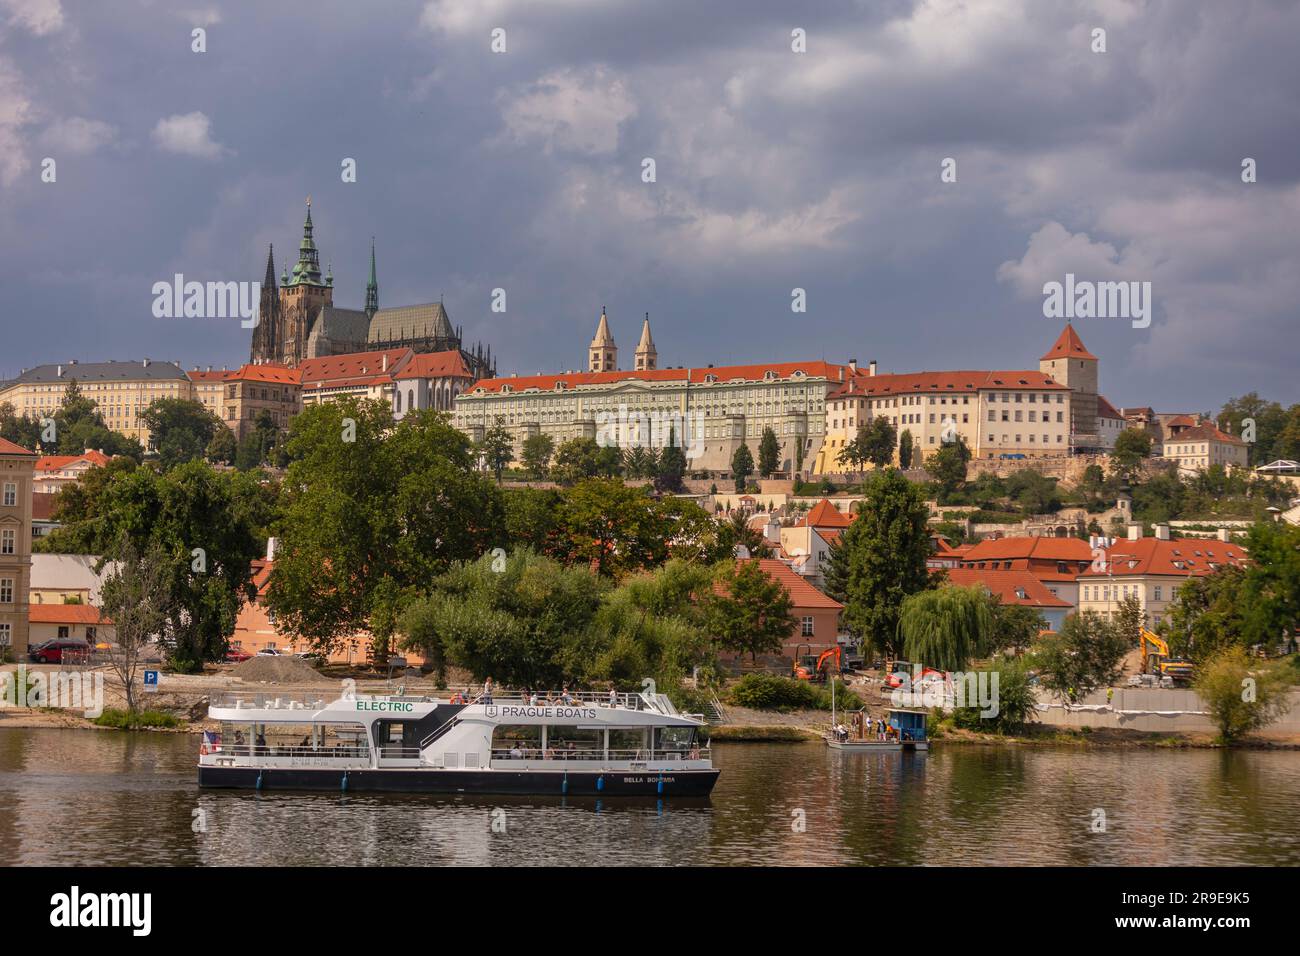 PRAGA, REPÚBLICA CHECA, EUROPA - Crucero en barco por el río Moldava. Catedral de San Vito, arriba a la izquierda, y Castillo de Praga. Foto de stock